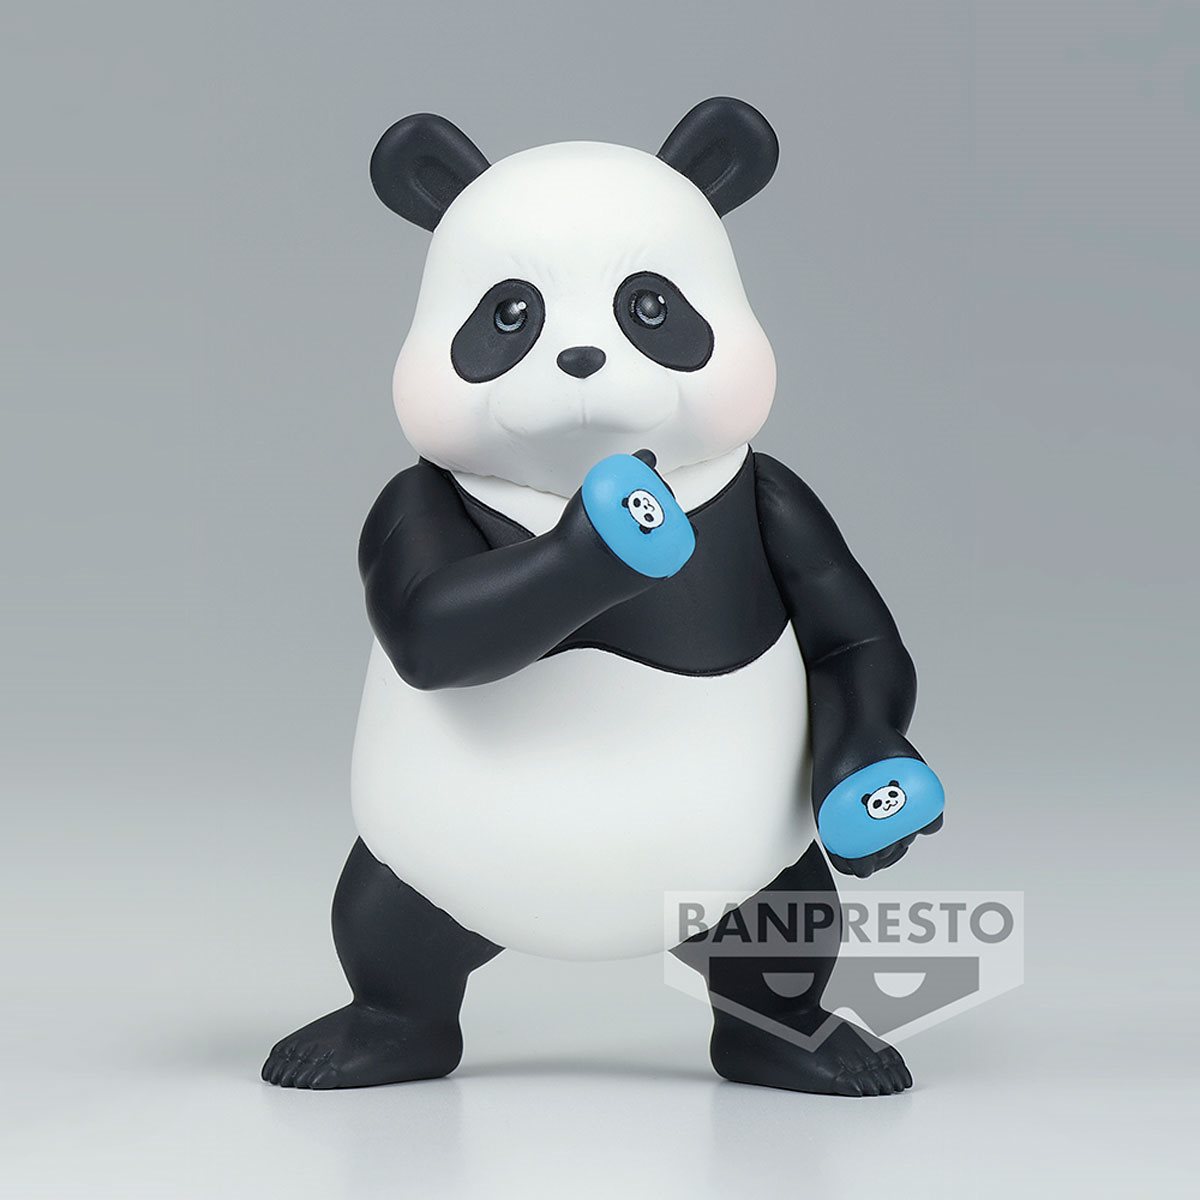 petit panda plush doll